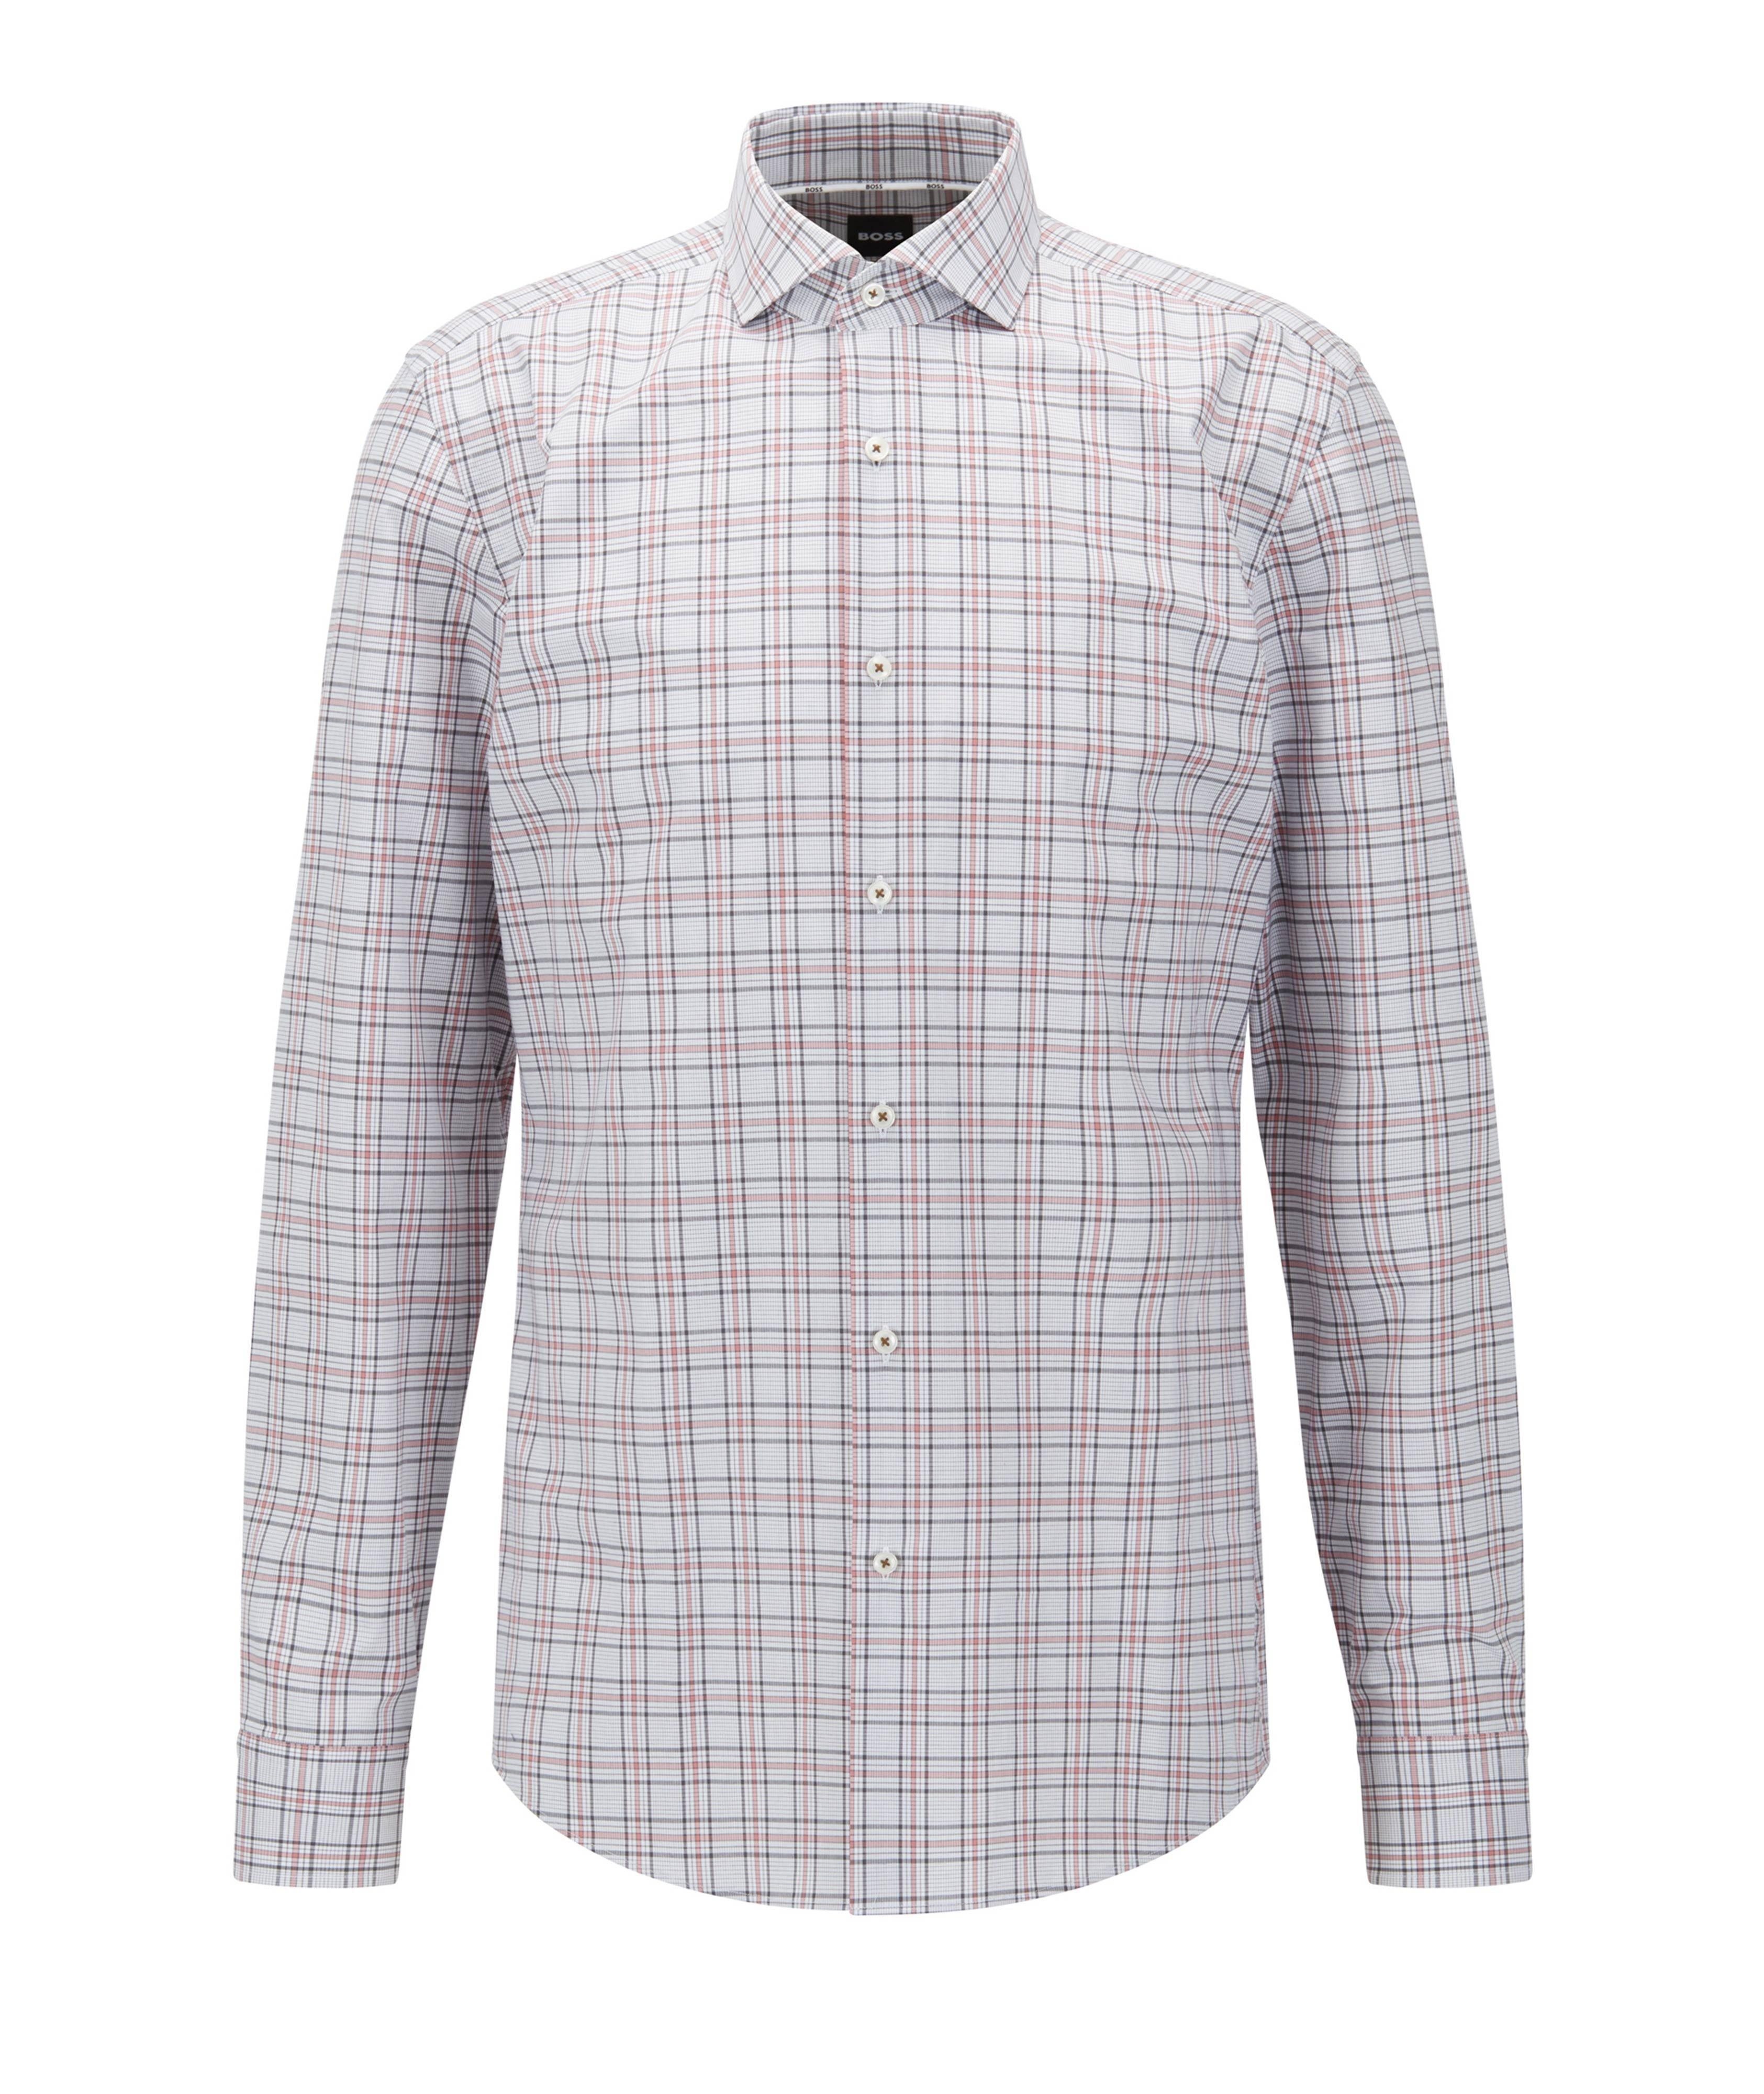 Chemise habillée en coton à motif quadrillé de coupe amincie image 0